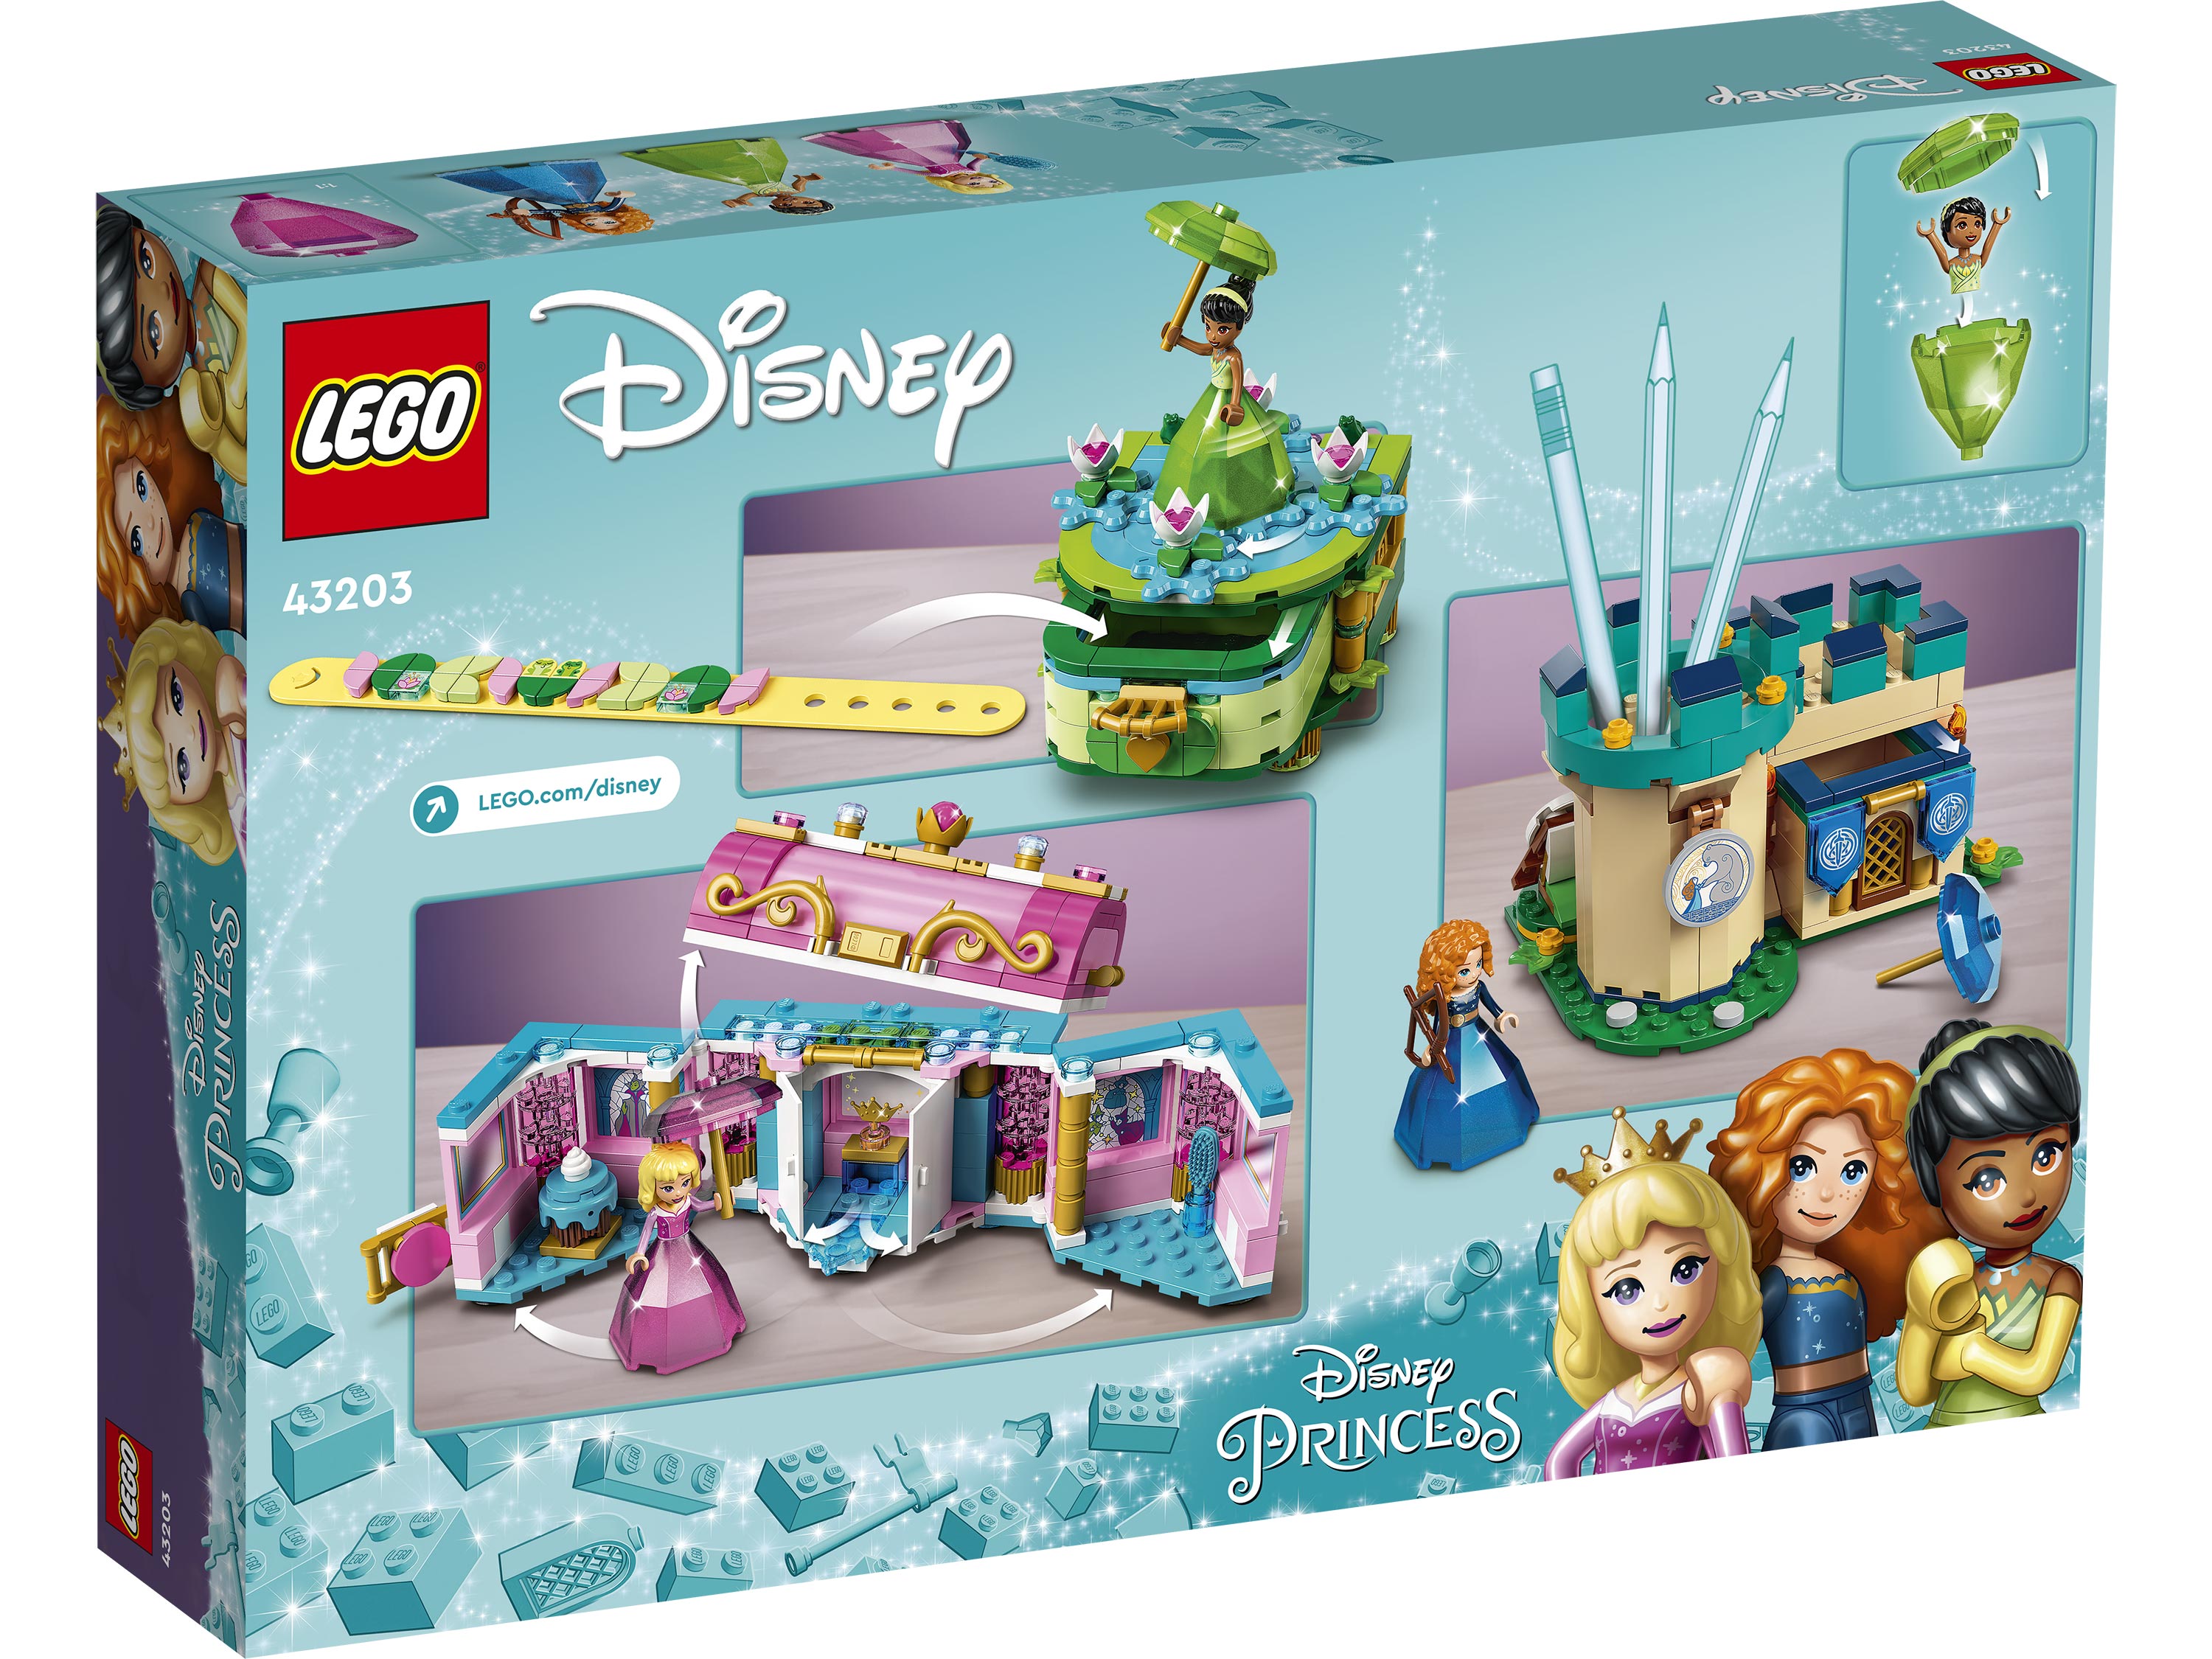 LEGO Disney 43203 Очарованные творения Авроры, Мериды и Тианы